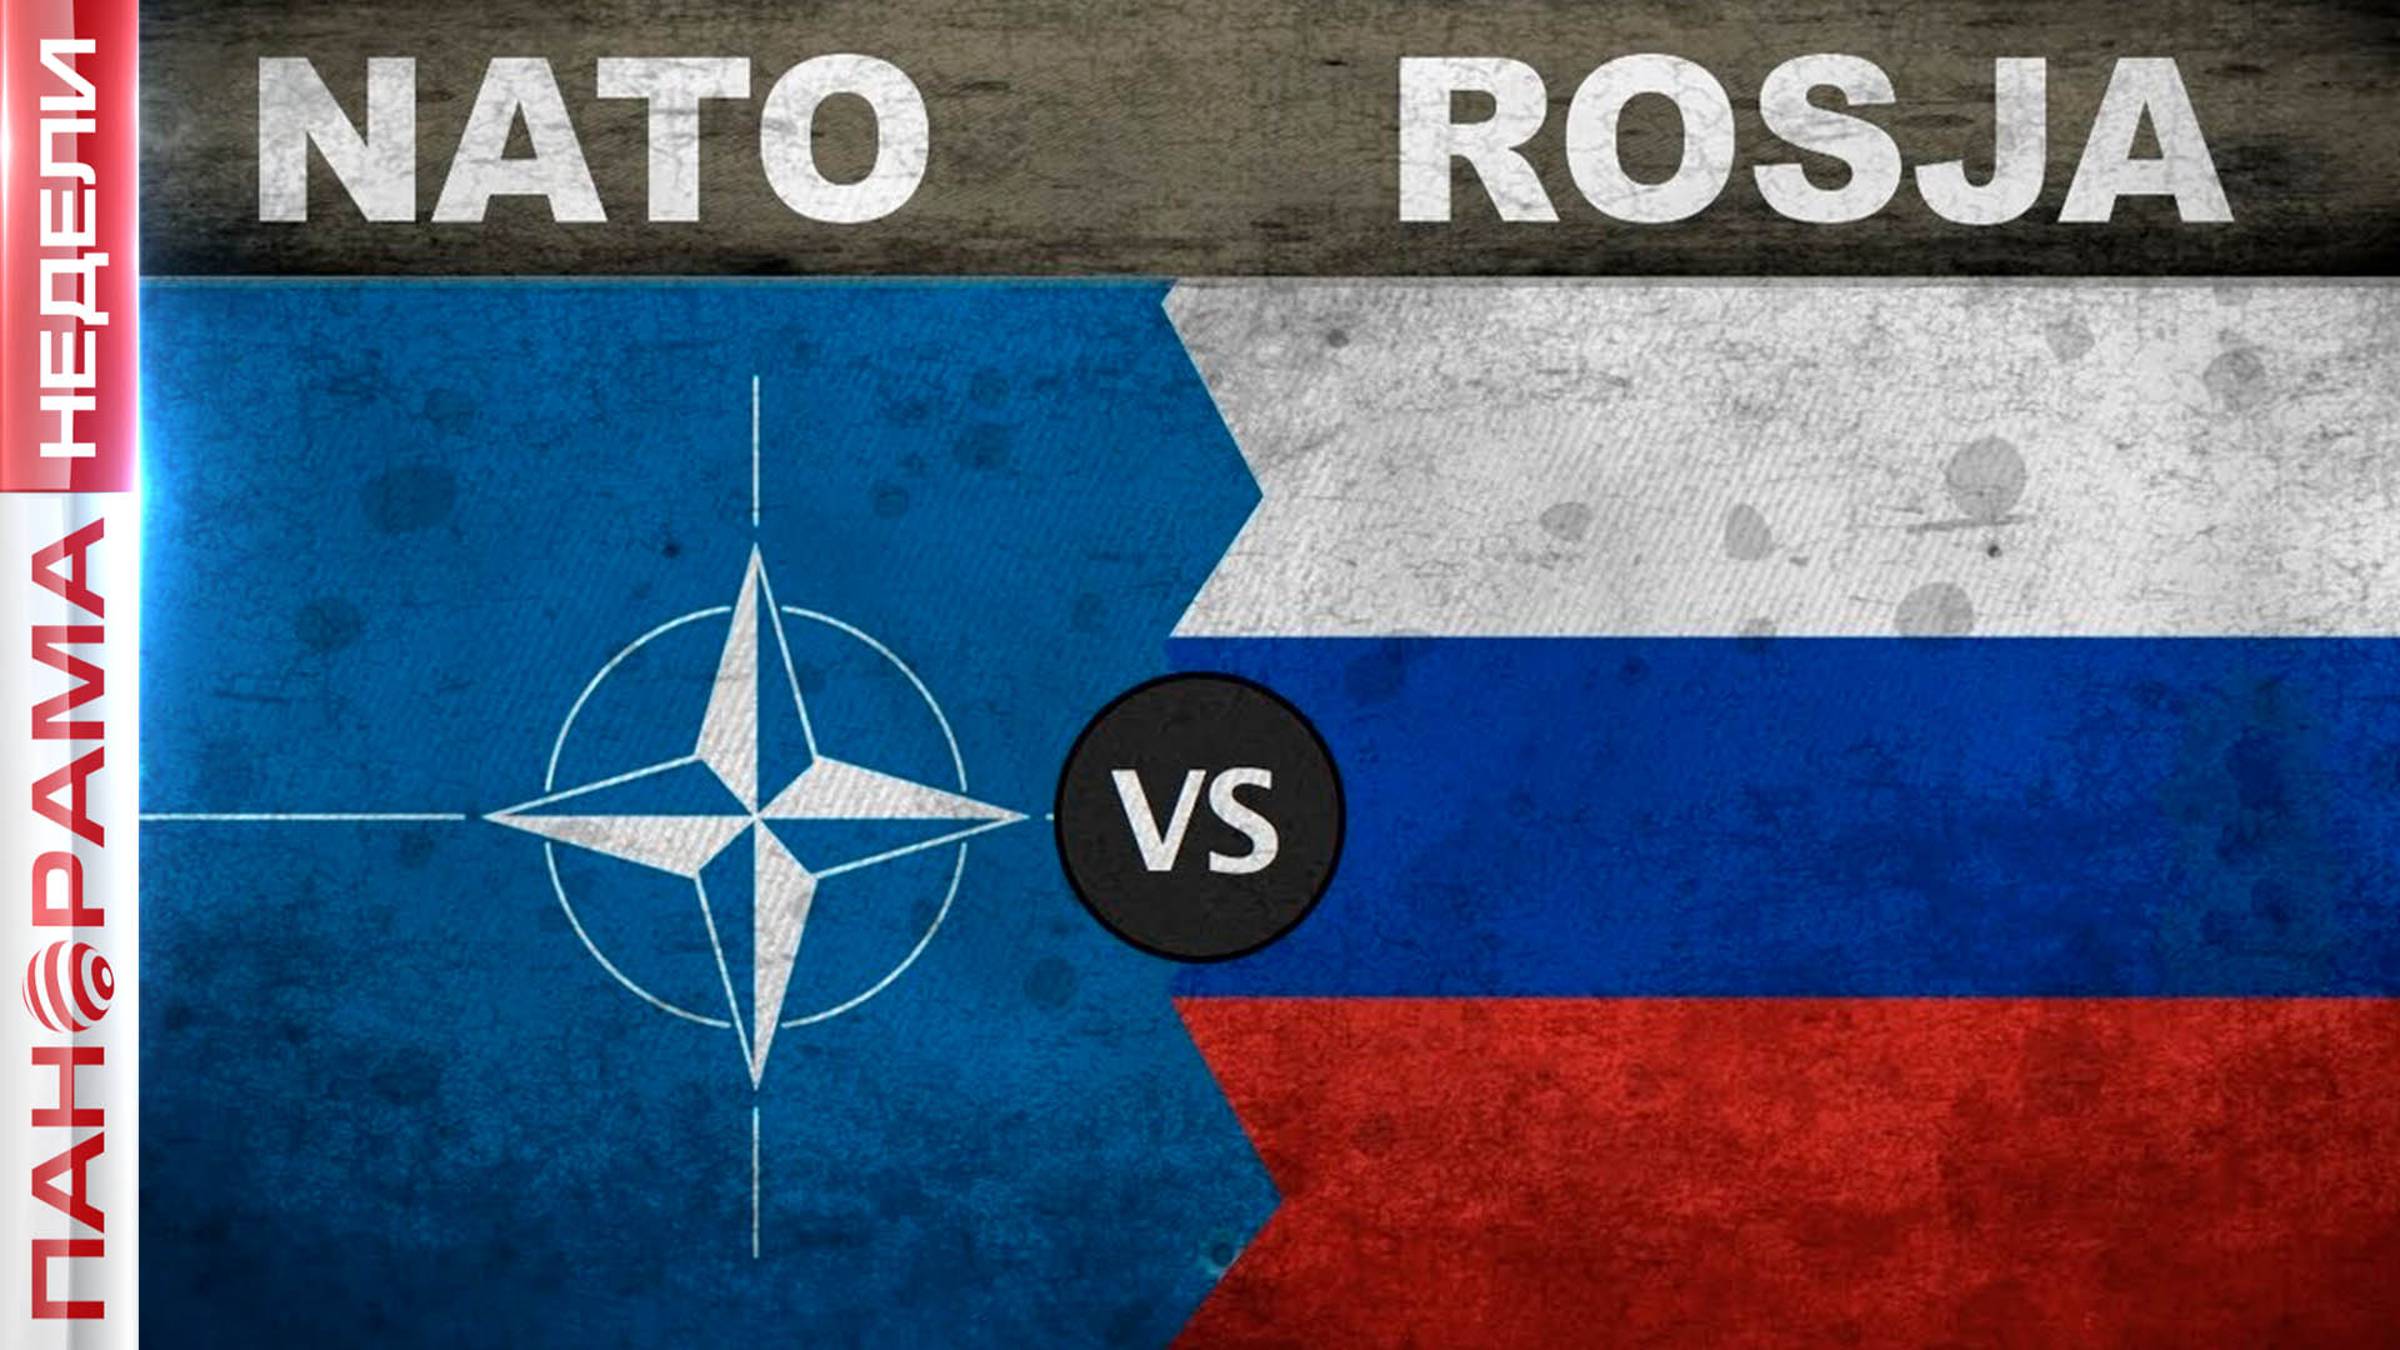 НАТО против России. На что способен альянс и какую реакцию ждать от РФ?